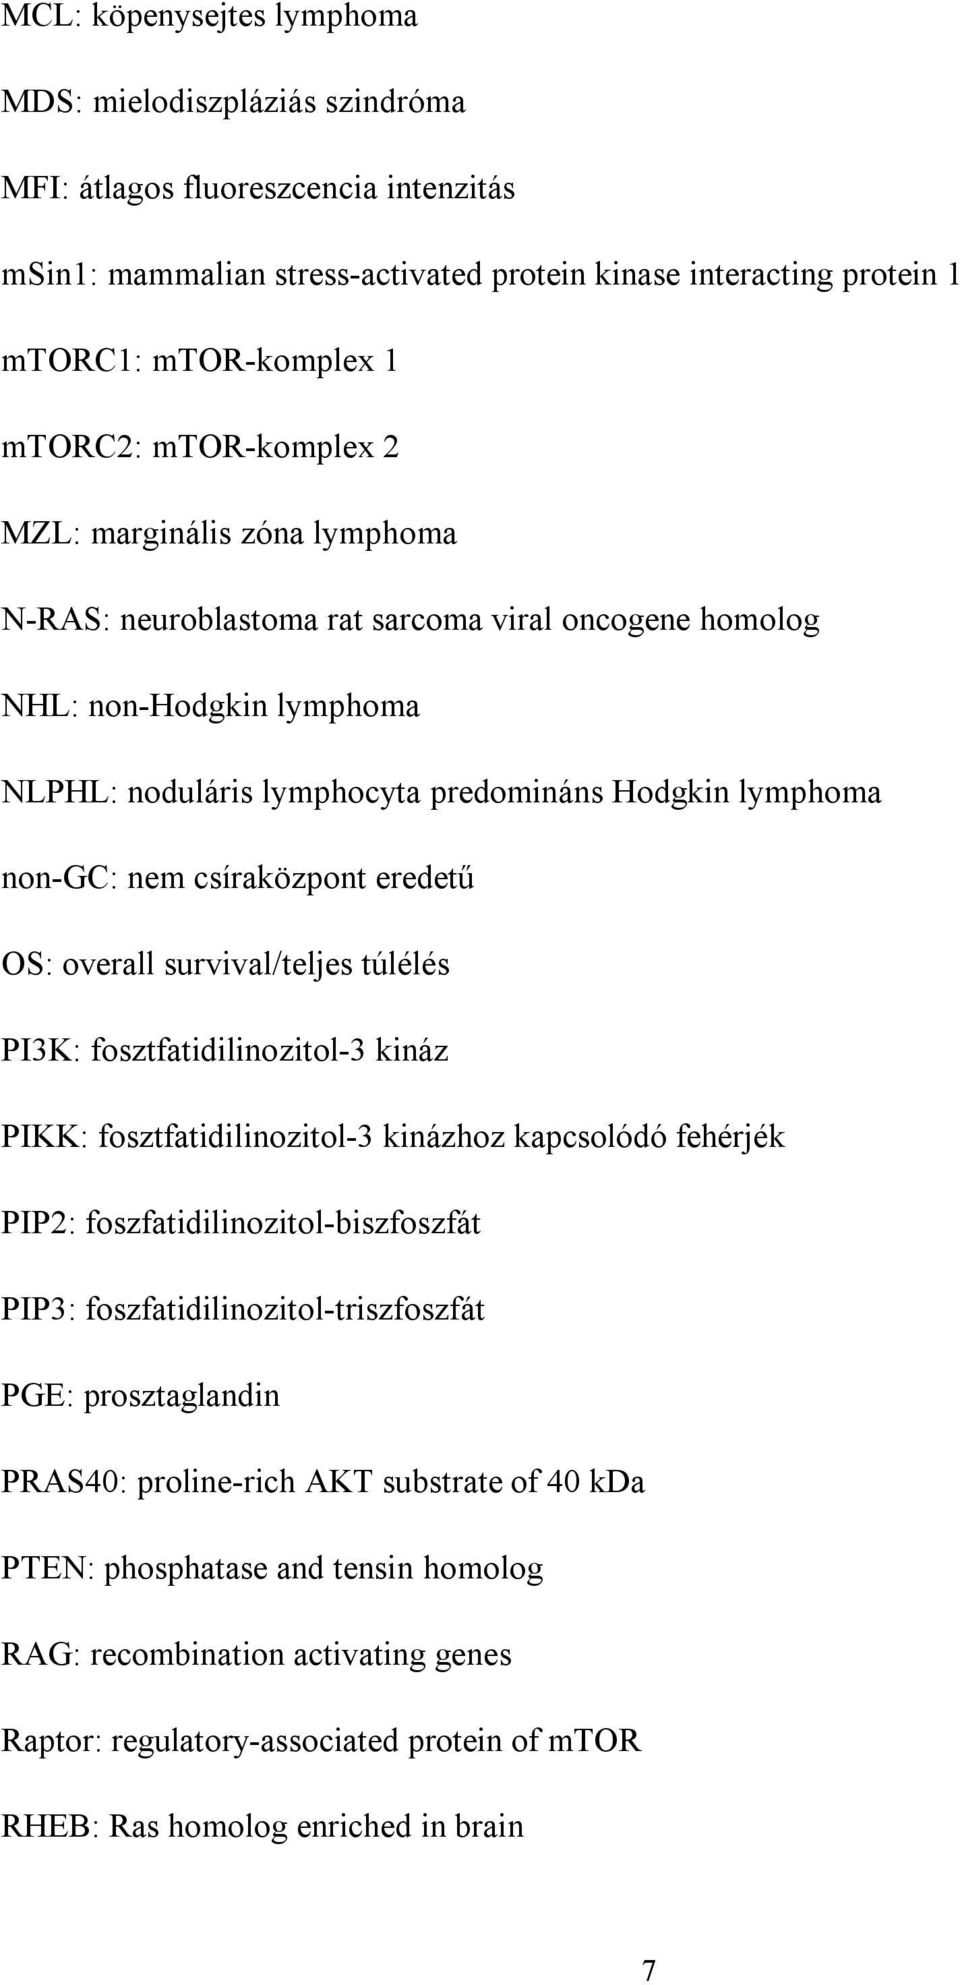 csíraközpont eredetű OS: overall survival/teljes túlélés PI3K: fosztfatidilinozitol-3 kináz PIKK: fosztfatidilinozitol-3 kinázhoz kapcsolódó fehérjék PIP2: foszfatidilinozitol-biszfoszfát PIP3: